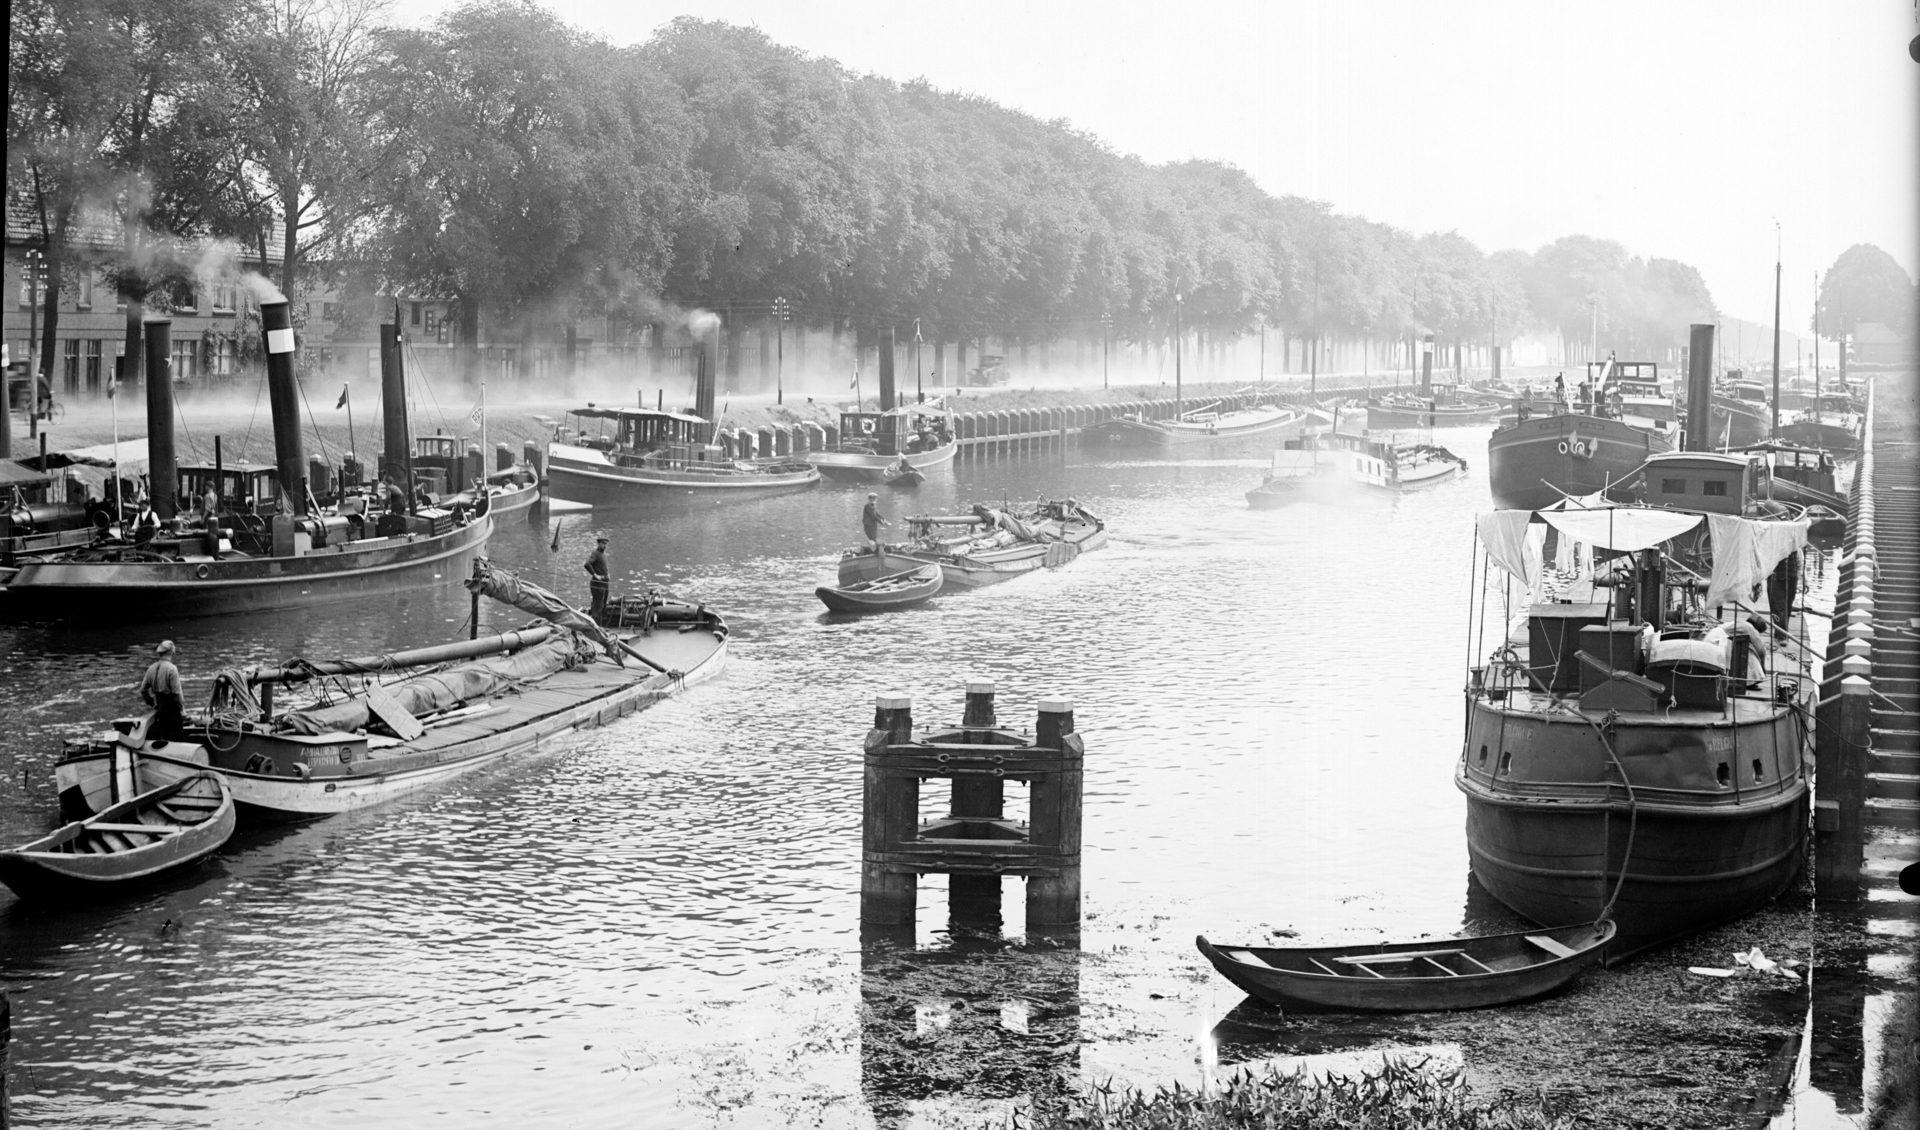 Op de foto zien we druk scheepvaartverkeer ergens tussen 1910 en 1930. Fotonummer: 0003775. Collectie: Erfgoed ’s-Hertogenbosch